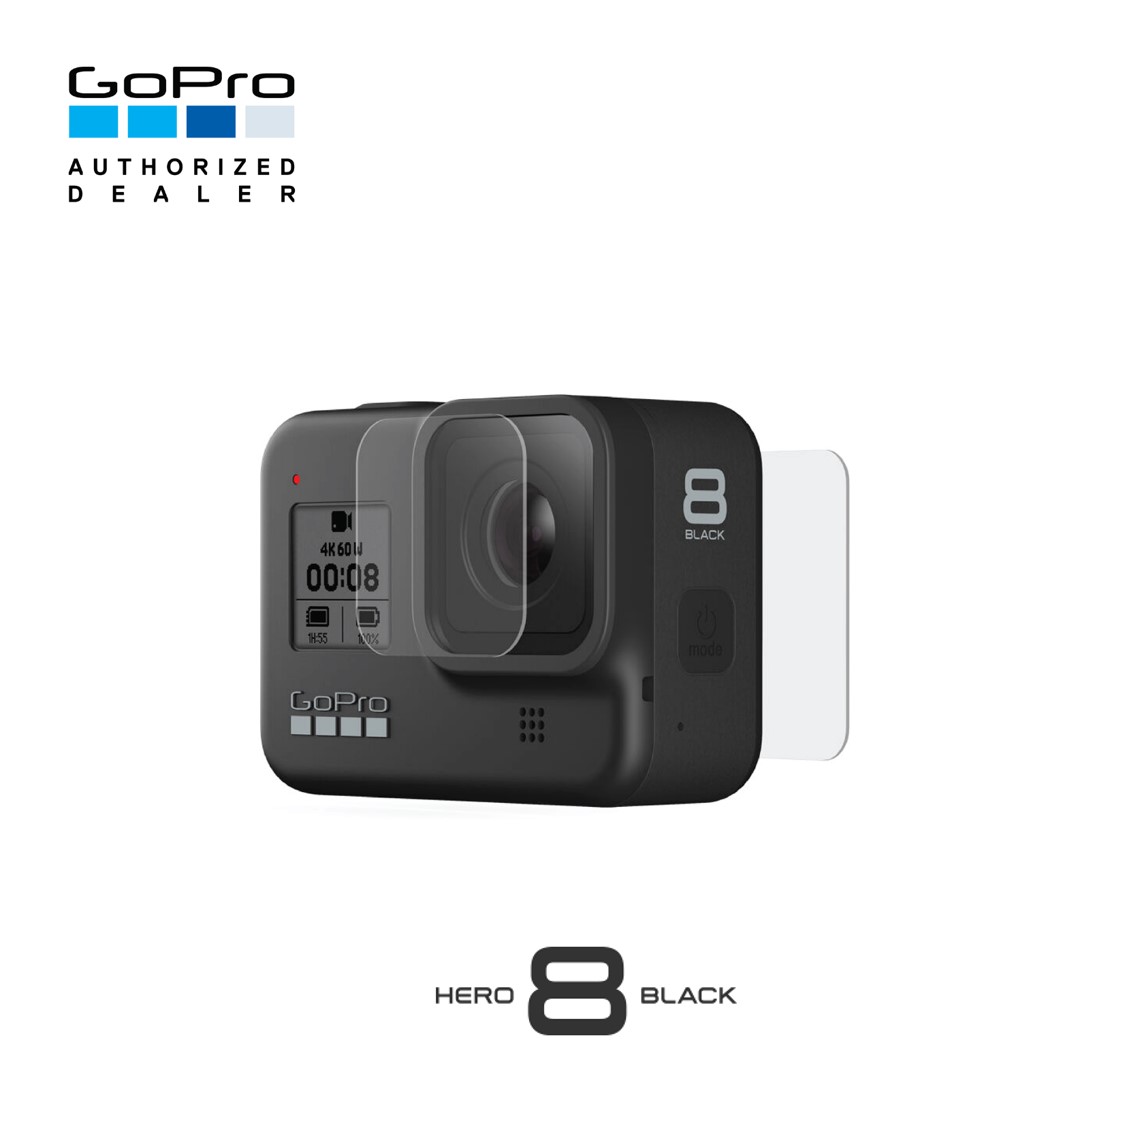 GoPro Tempered Glass Lens + Screen Protectors ฟิล์มกระจกป้องกันรอยหน้าเลนส์และหน้าจอ สำหรับ HERO8 Black มีให้อย่างละ 2 ชุดในกล่อง